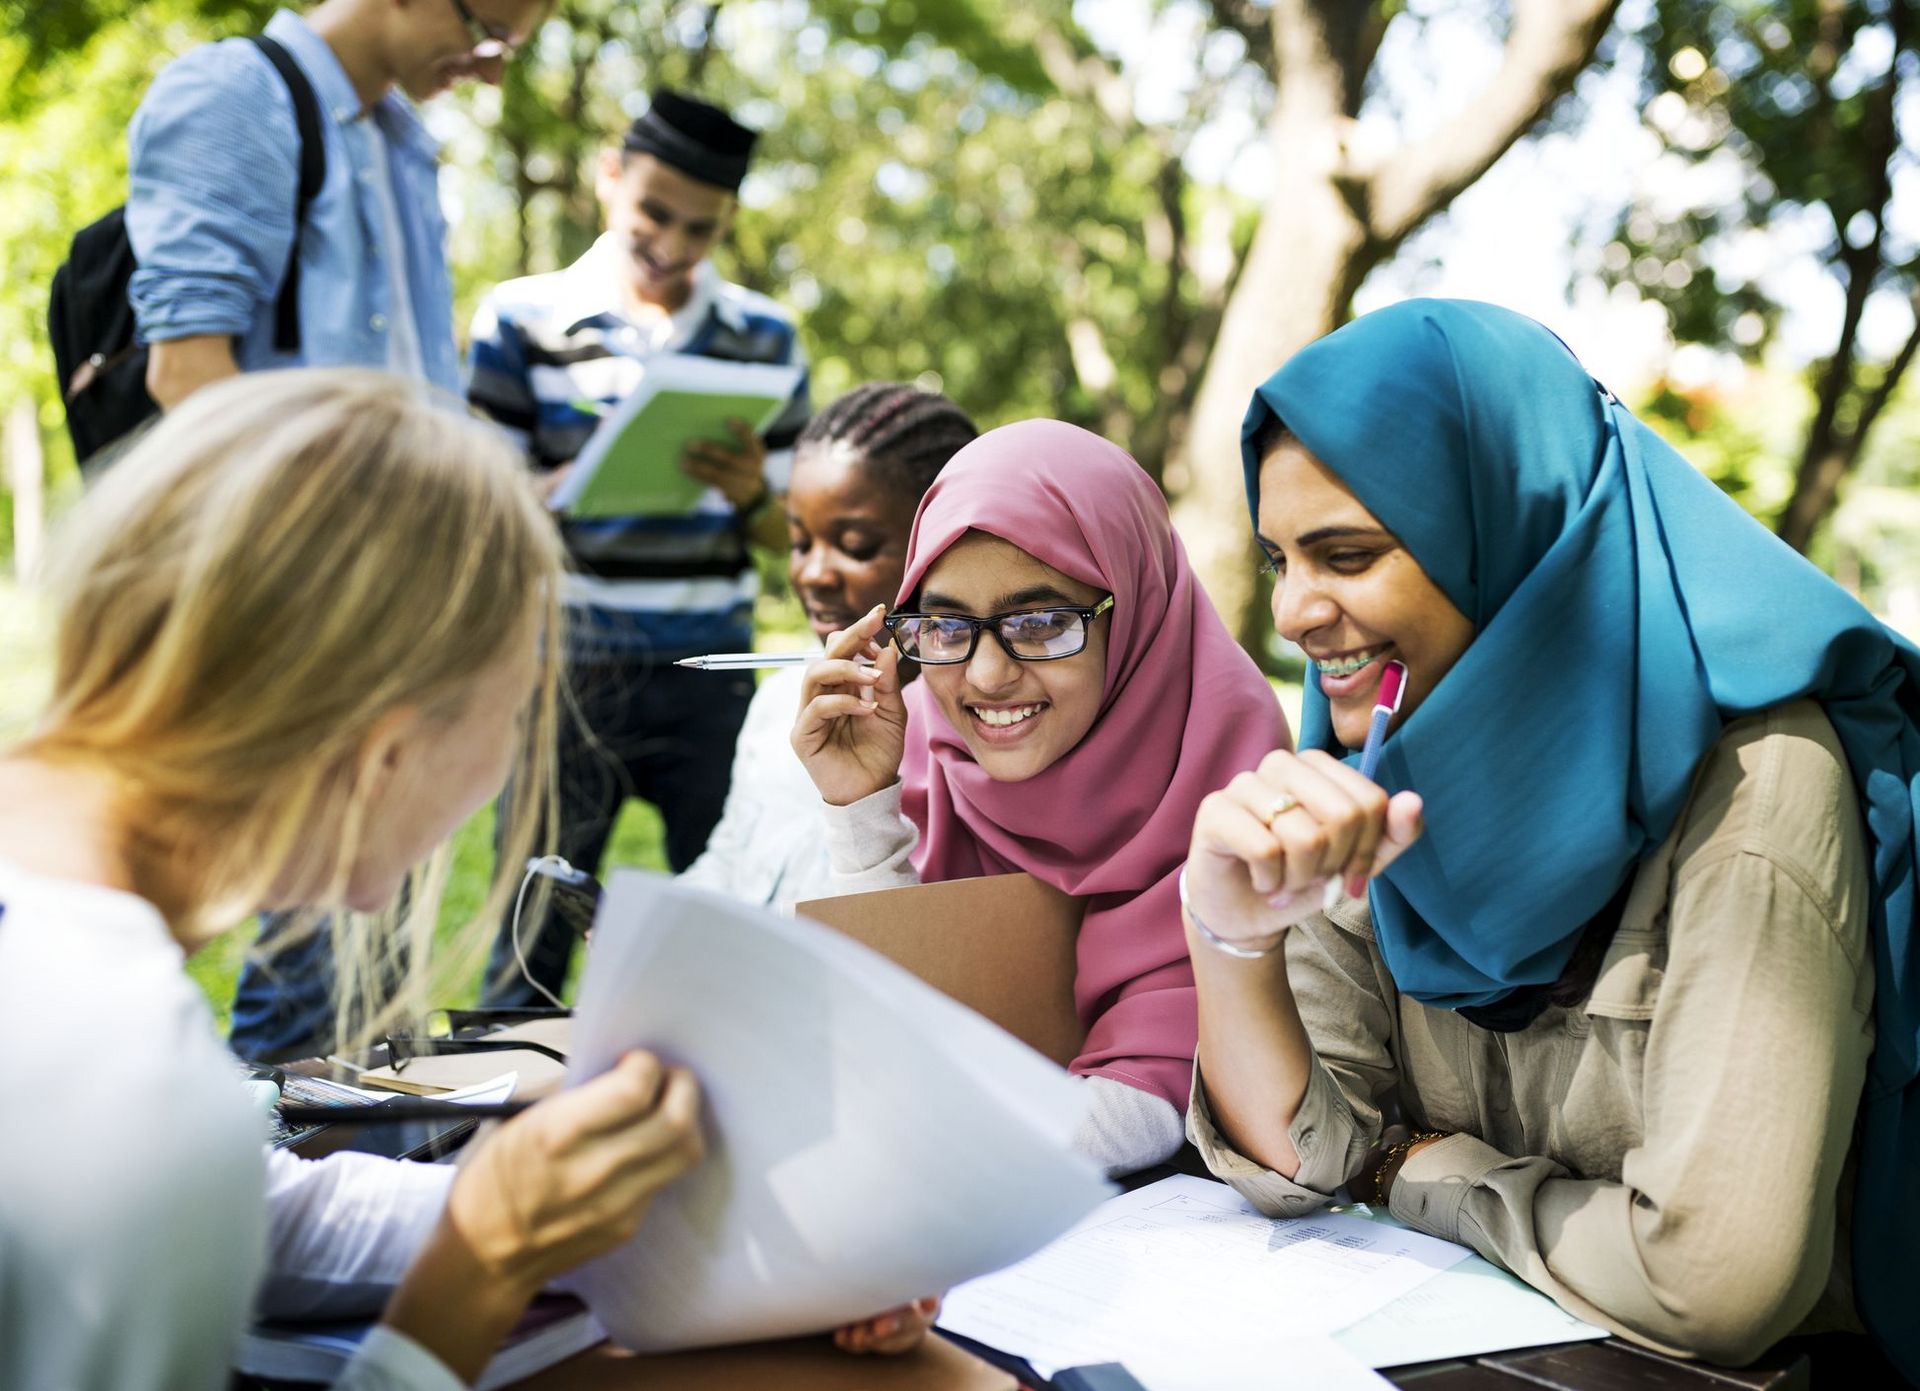 Drei weibliche Studierende (unterschiedliche Nationalitäten) in einem Campusgarten, die gemeinsam lernen und sich Skripte ansehen. Im Hintergrund stehen zwei weitere Studierende mit Rucksack und Lernmaterialien in der Hand.